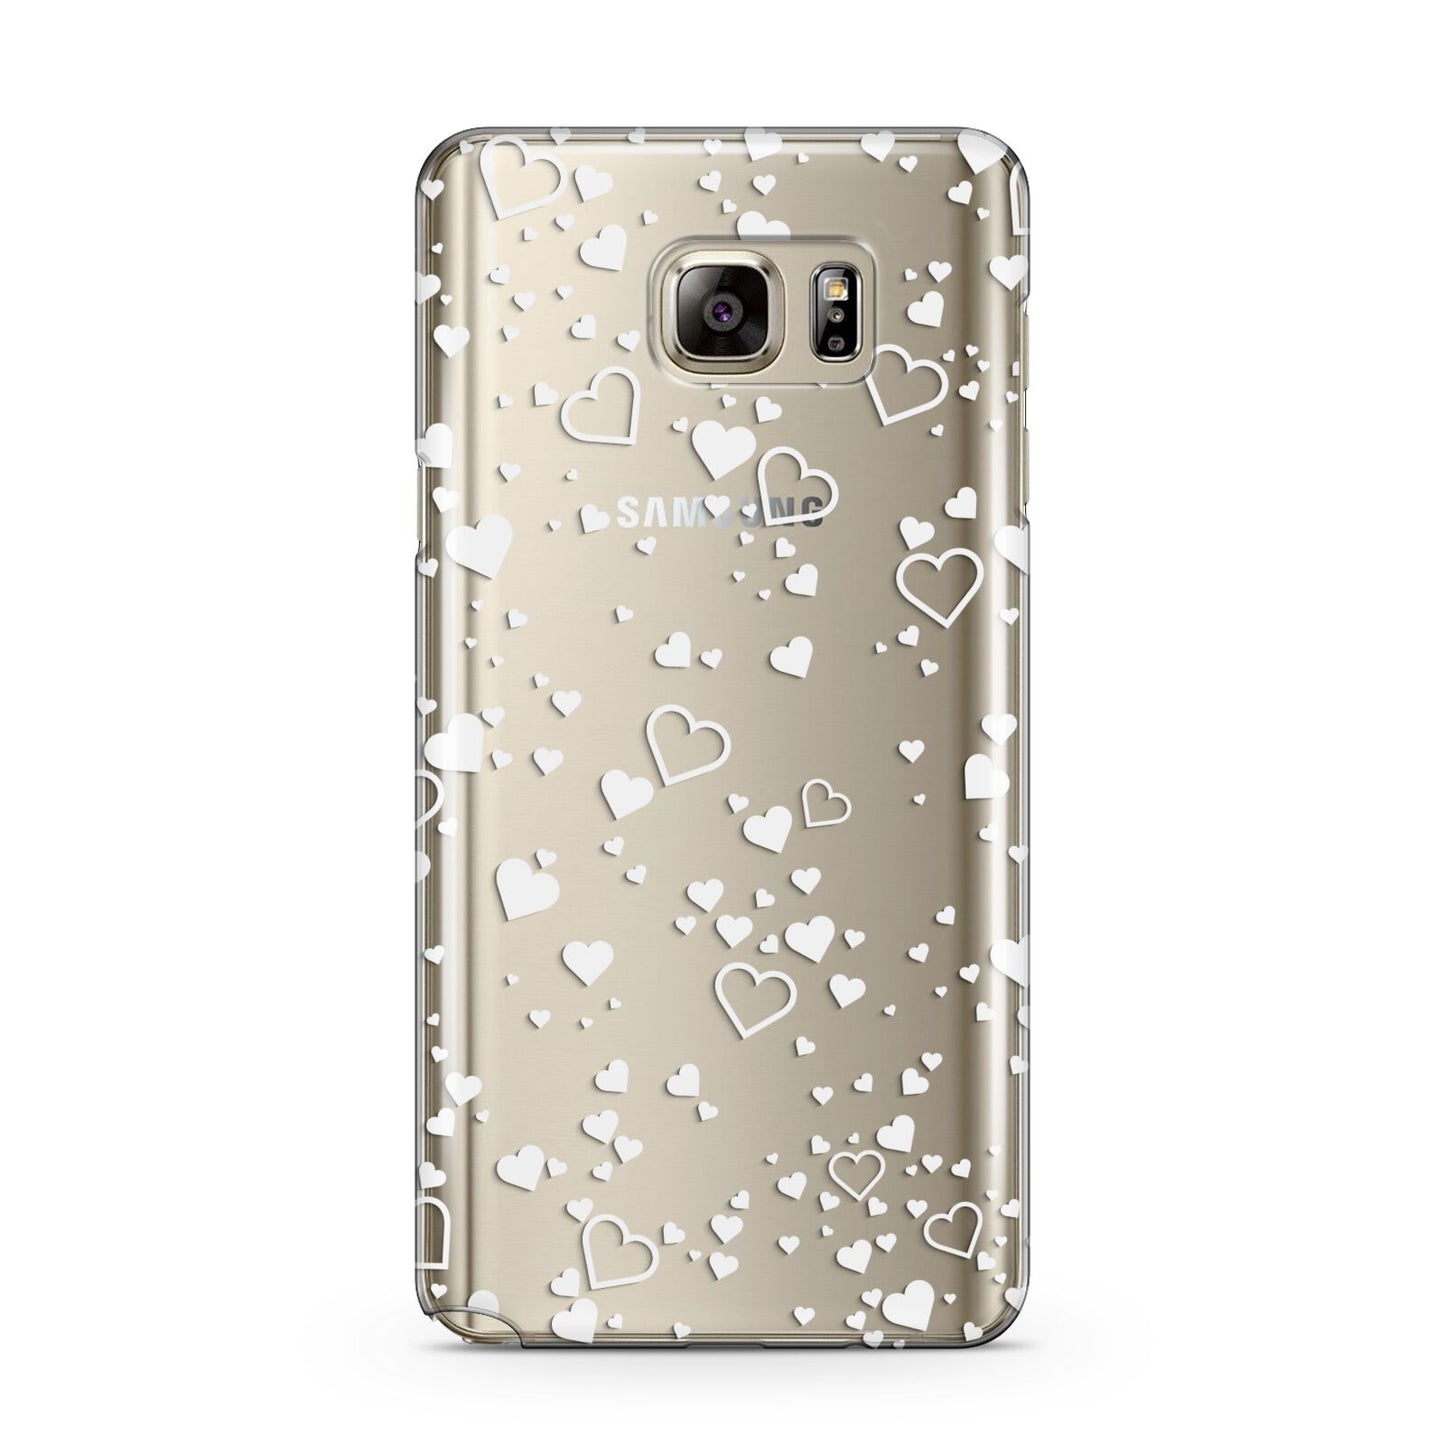 White Heart Samsung Galaxy Note 5 Case